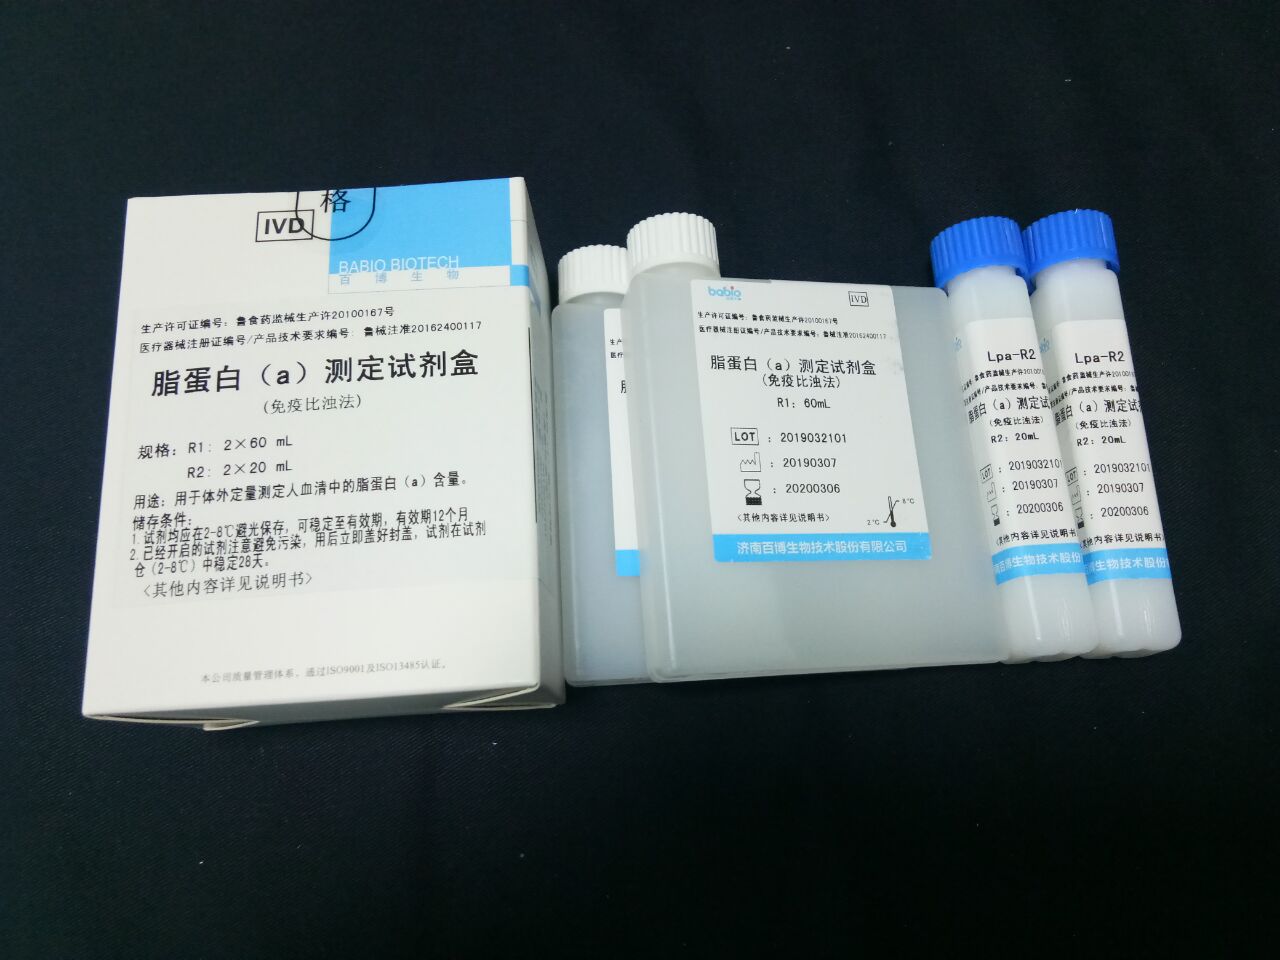 【百博】脂蛋白(a)测定试剂盒(免疫比浊法)